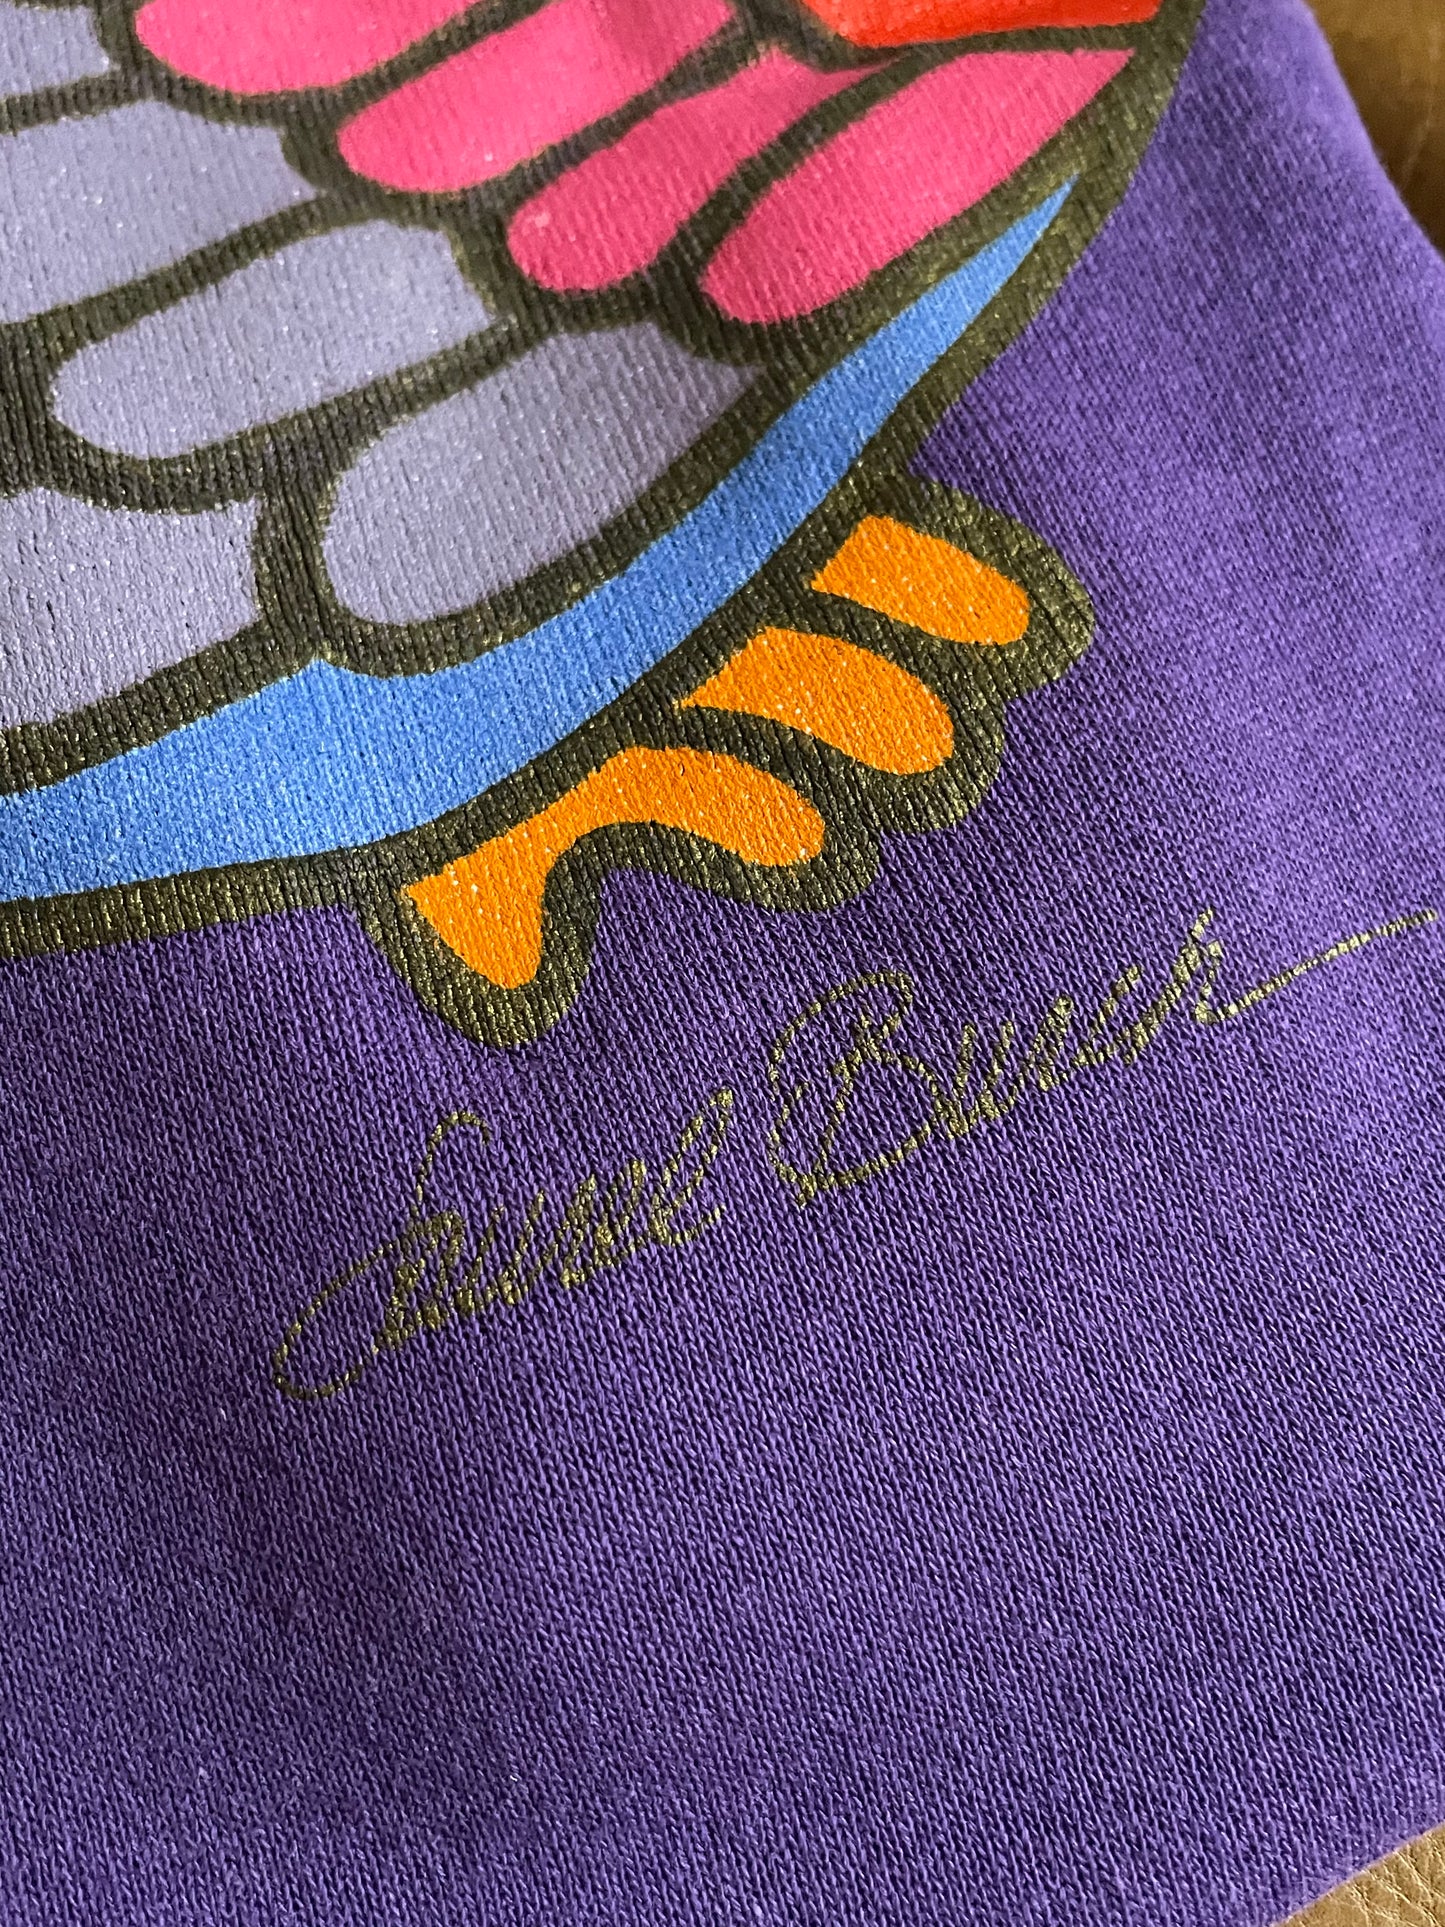 80s/90s Laurel Burch Rainbow Toucan Sweatshirt